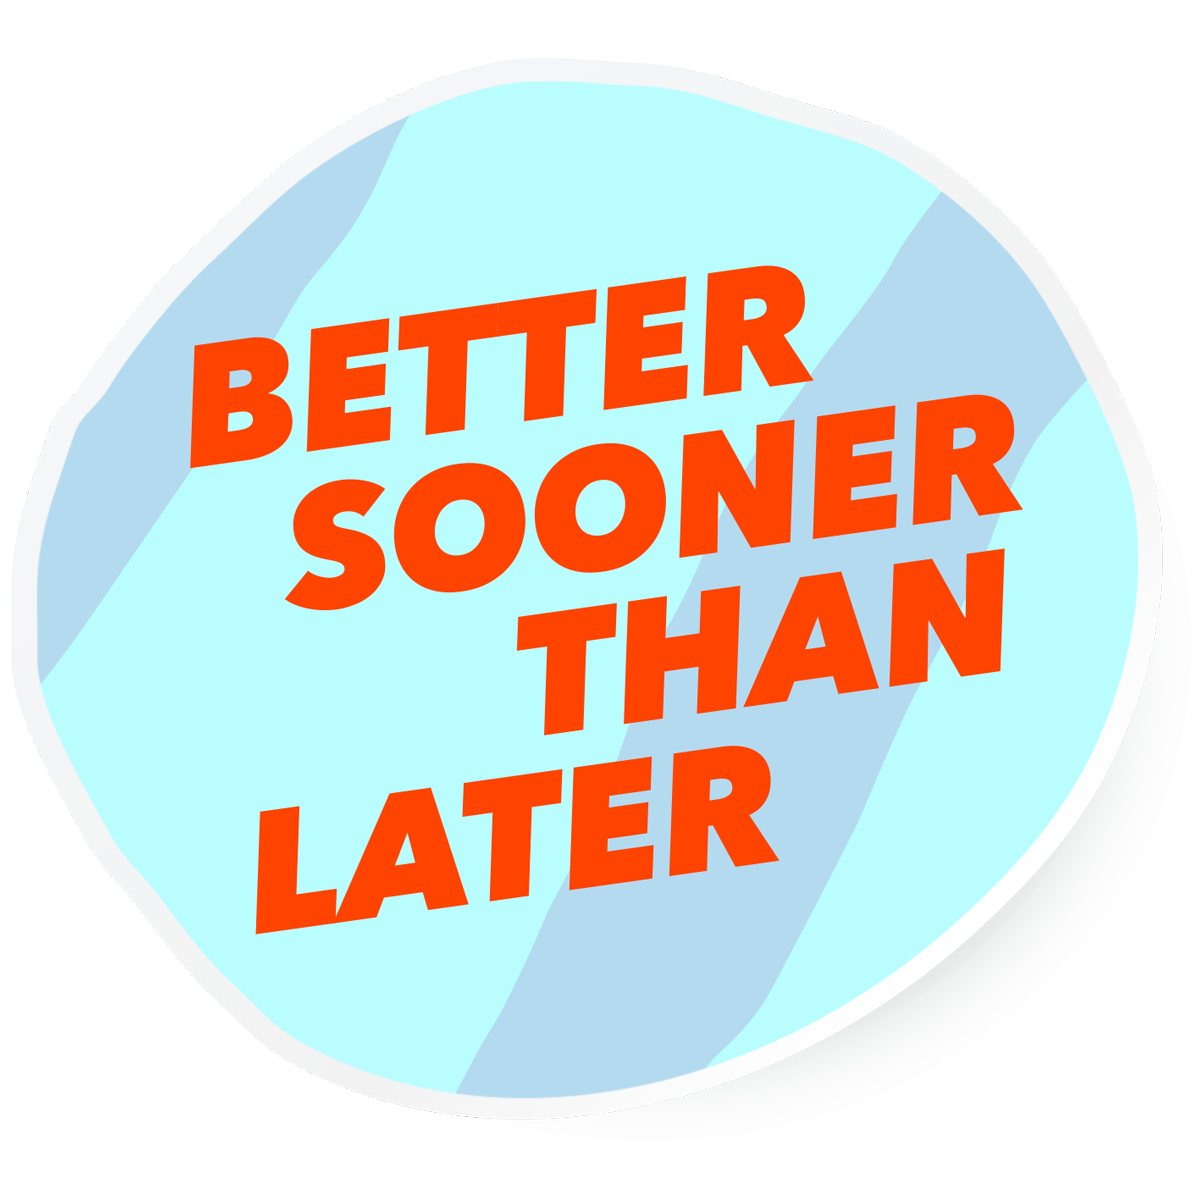 Better-sooner-than-later